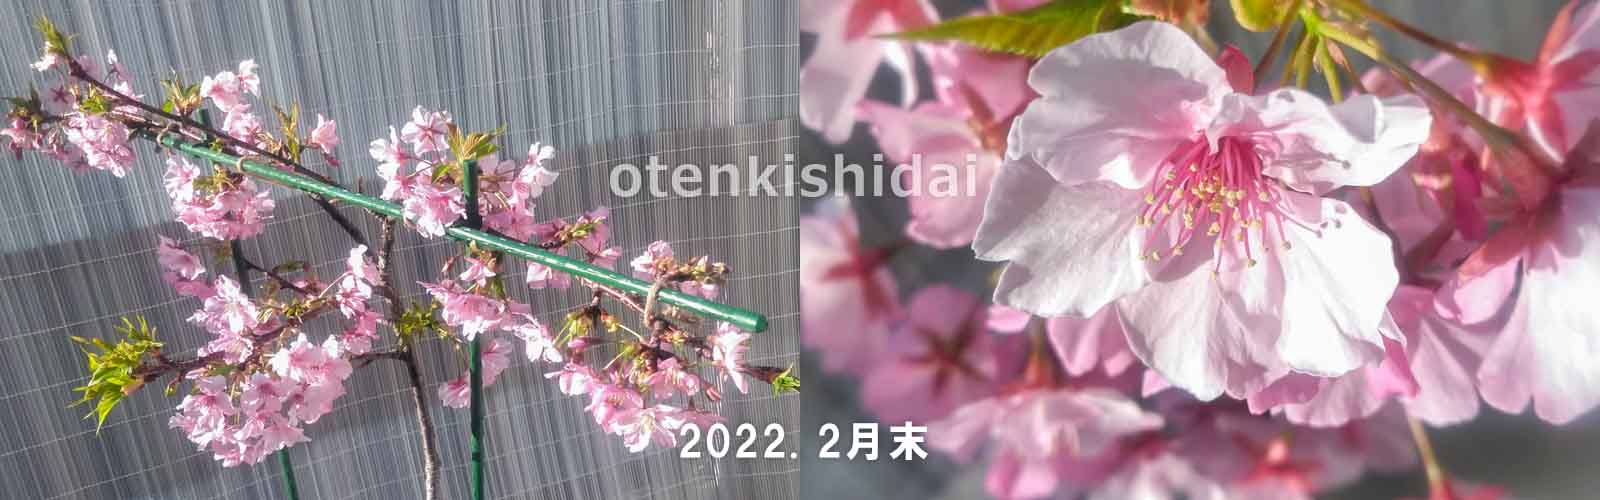 ベランダの河津桜の開花2022